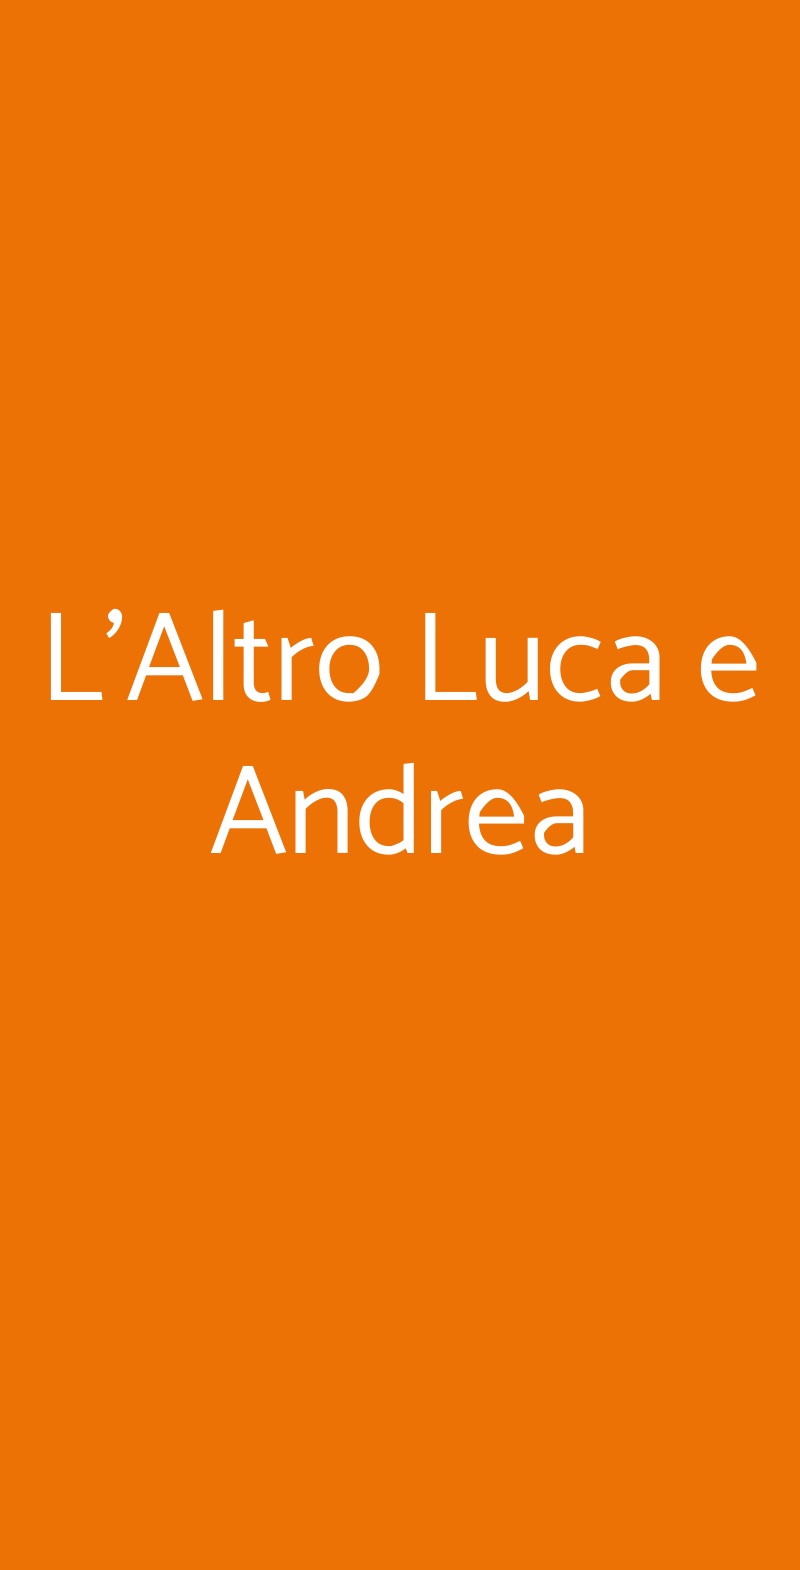 L'Altro Luca e Andrea Milano menù 1 pagina